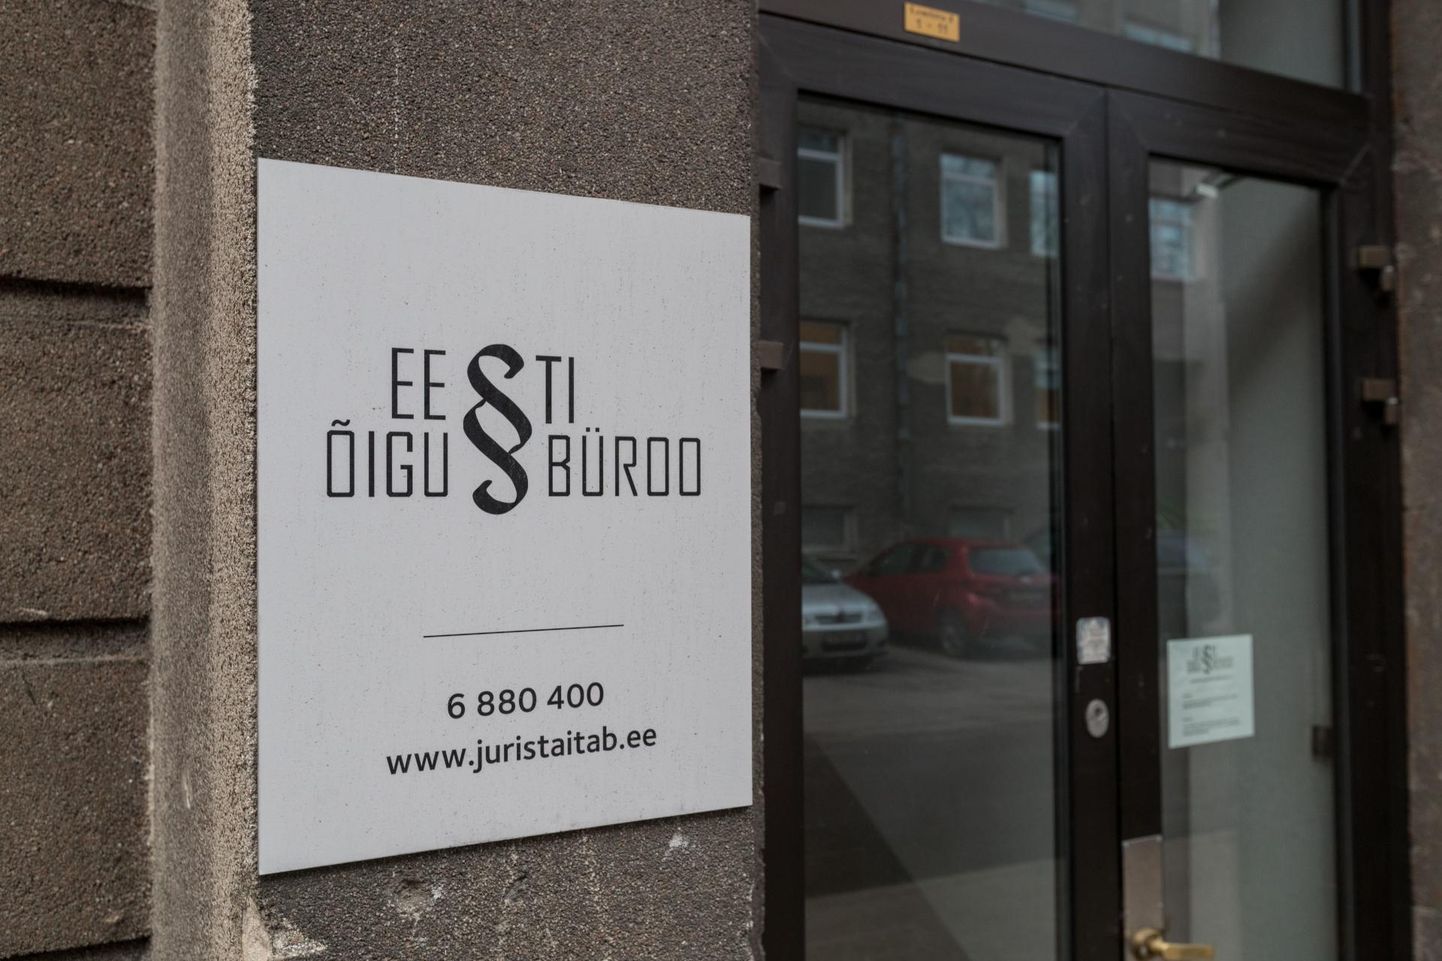 Õigusbüroo esindused tegutsevad üle Eesti.
 